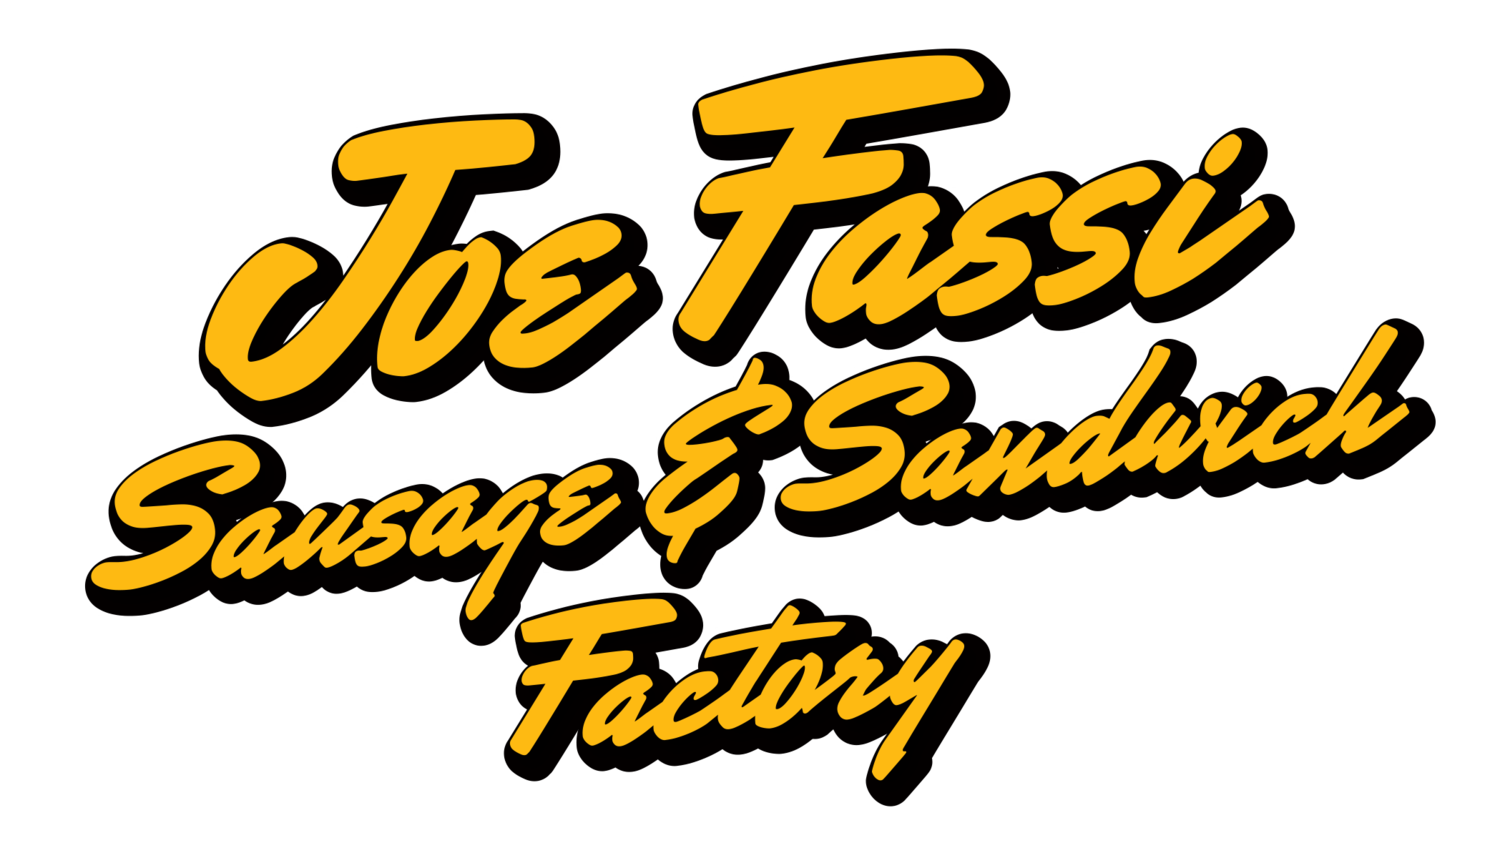 Joe Fassi Sandwich Factory